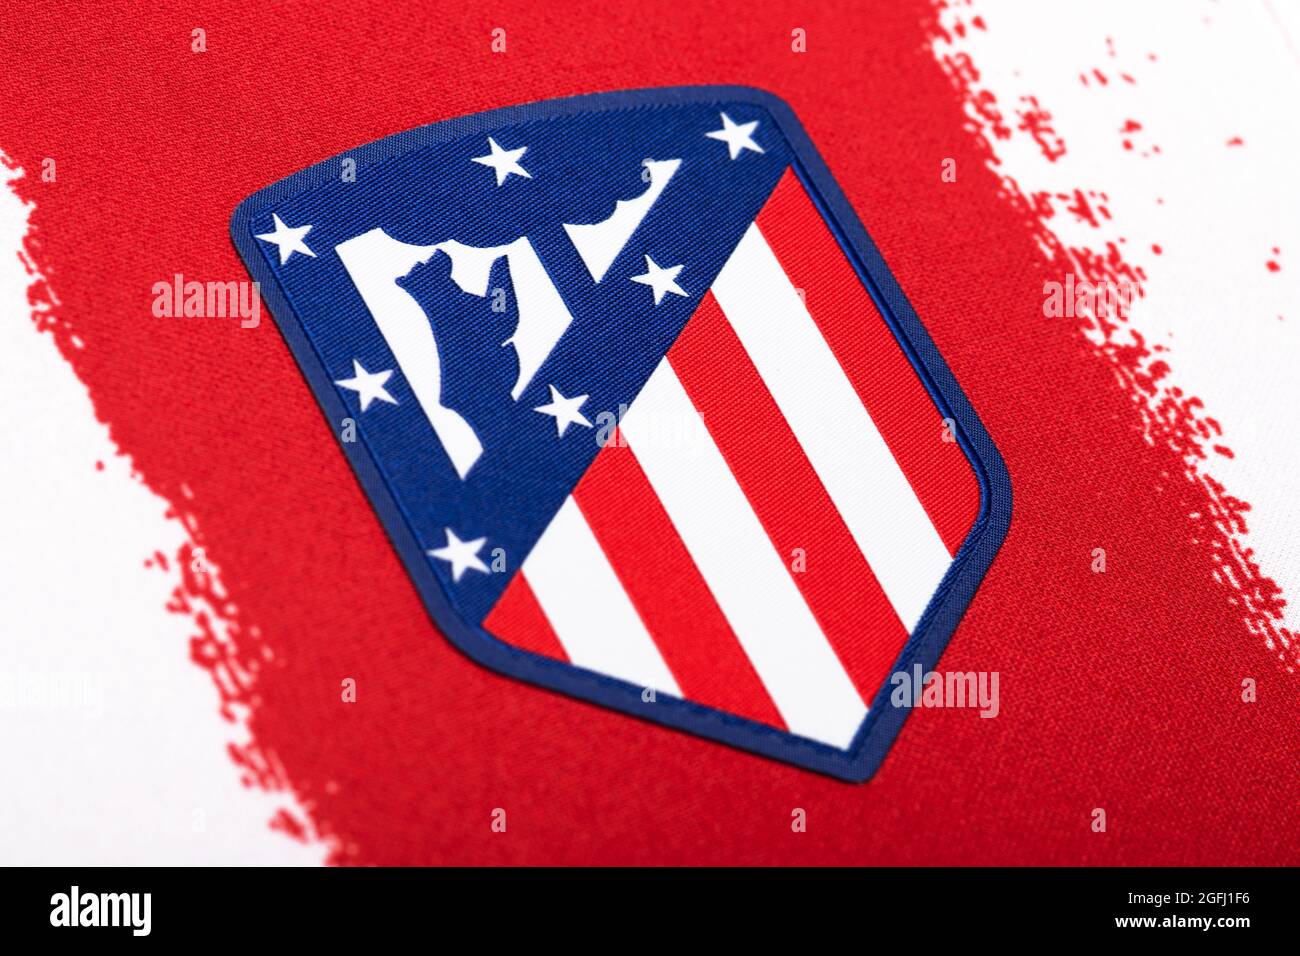 Nahaufnahme des Trikots des Club Atlético de Madrid 2020/21. Stockfoto